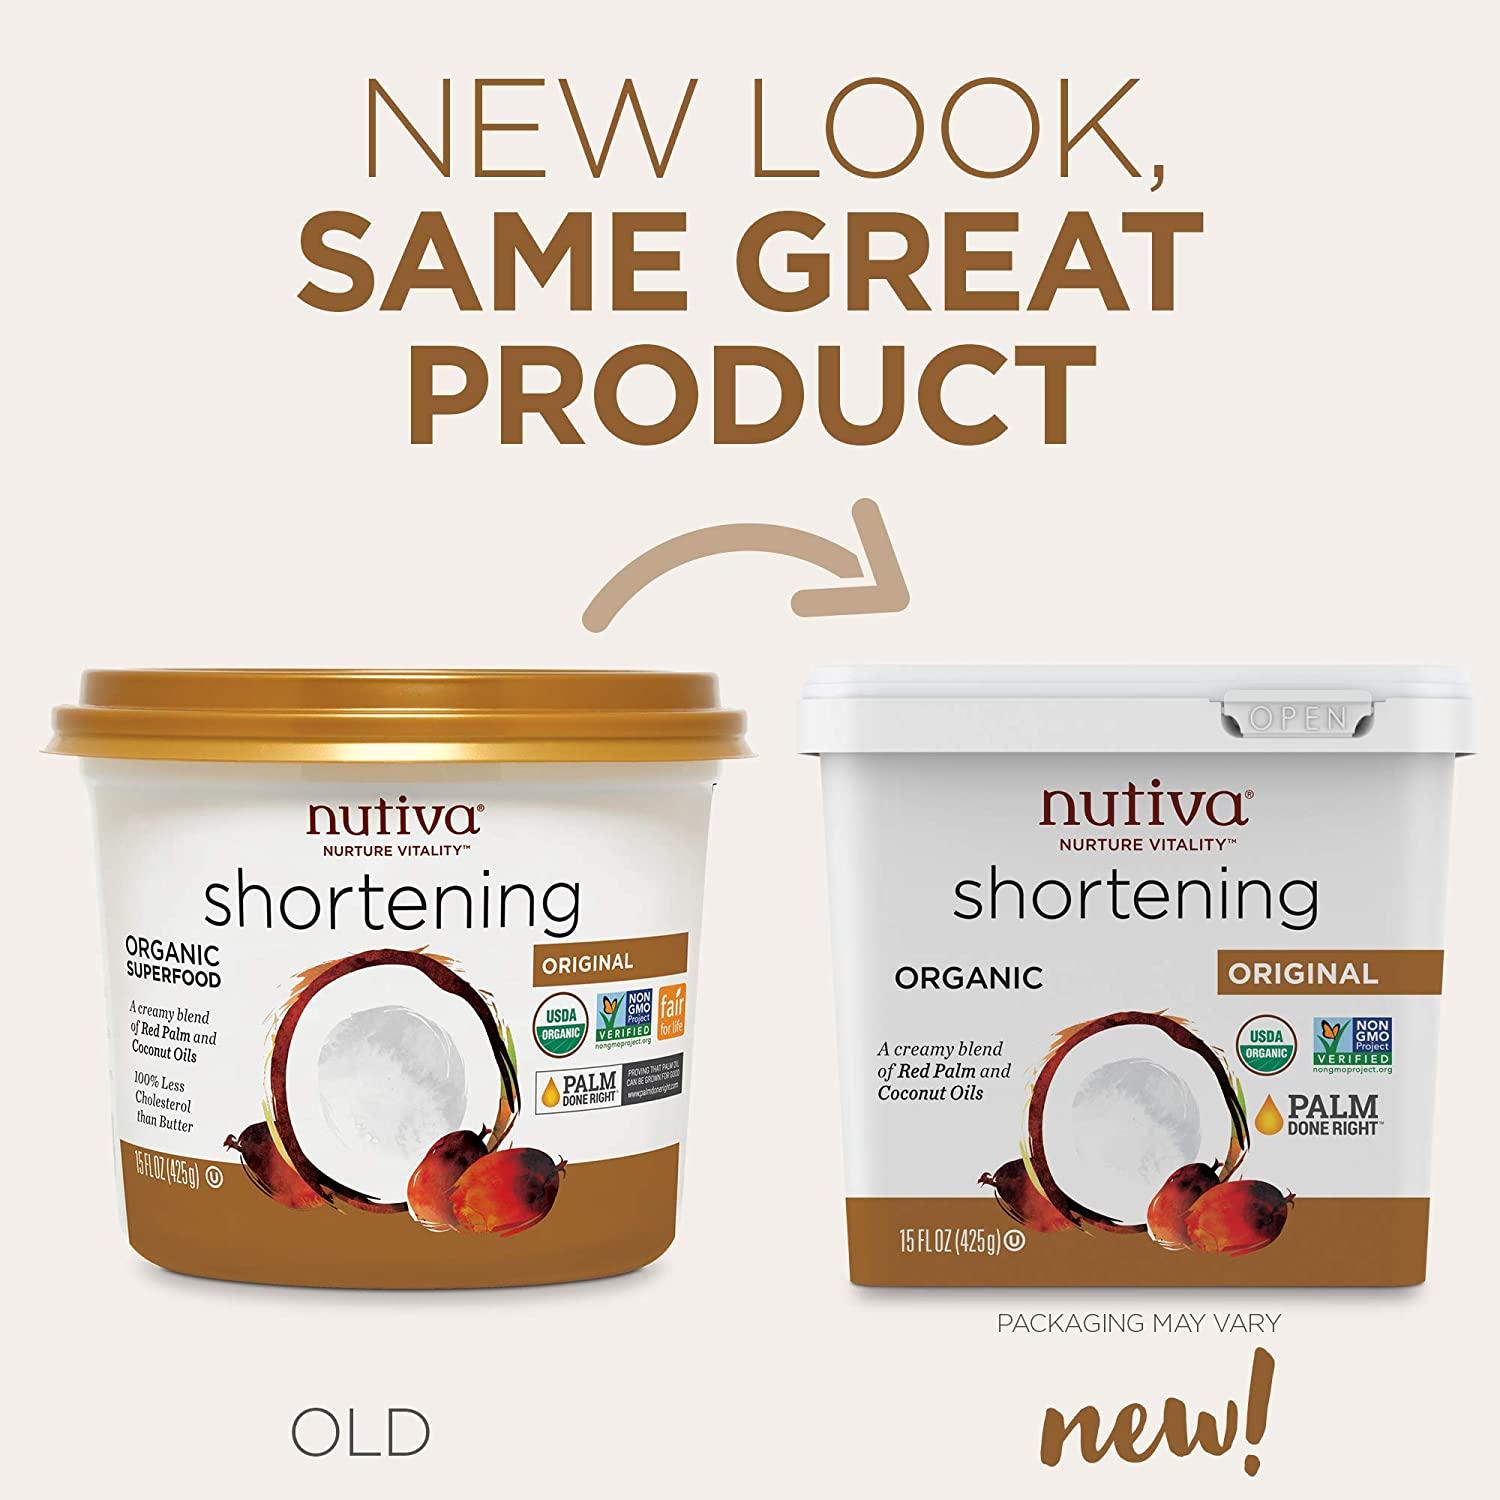 Nutiva Organic Shortening Original Red Palm and Coconut Oils 15 oz (425 g)